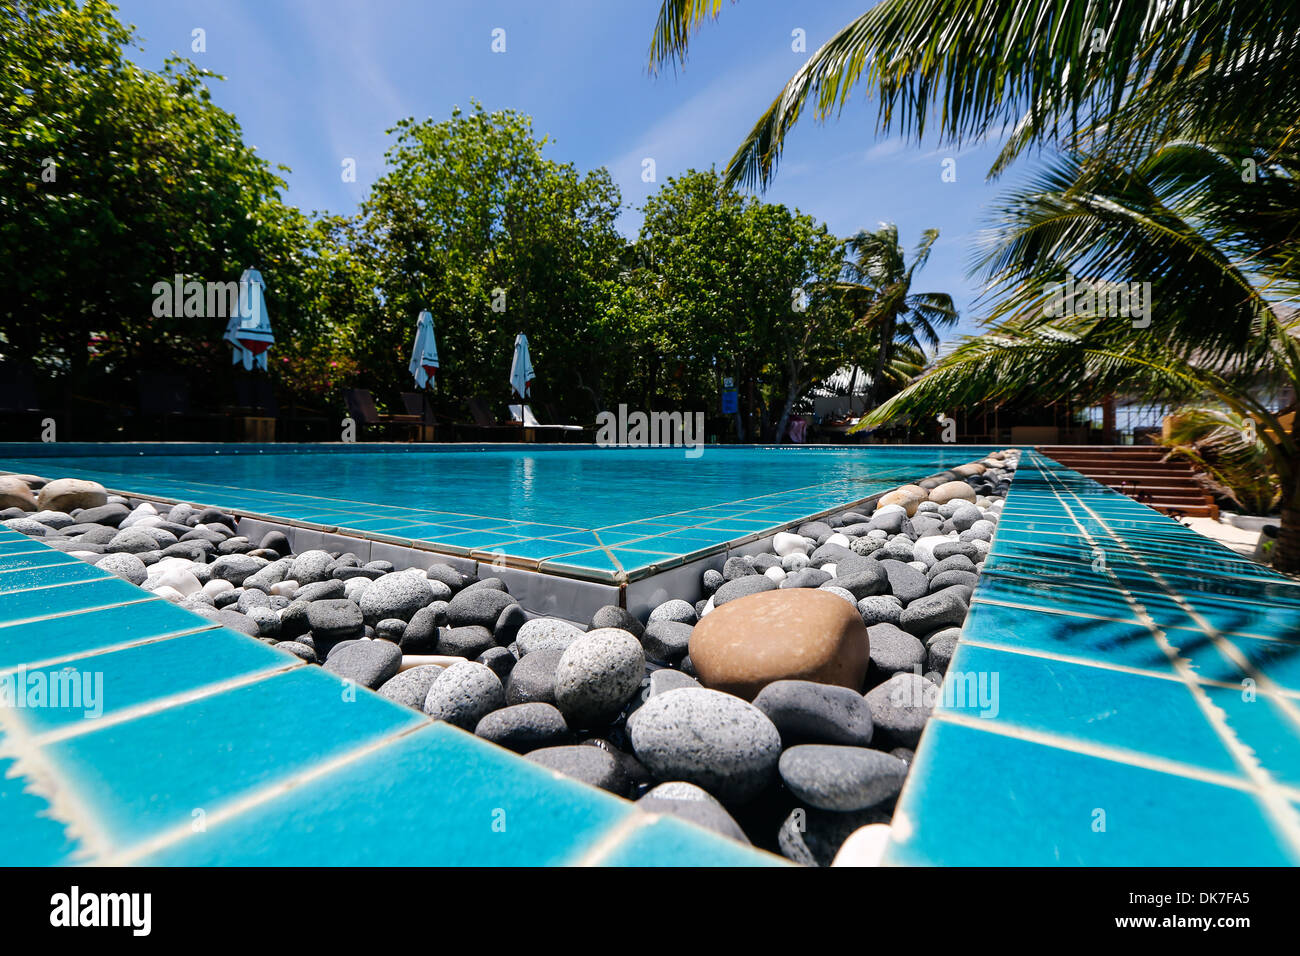 Piscine sur un quartier Paradise Island Resort Banque D'Images